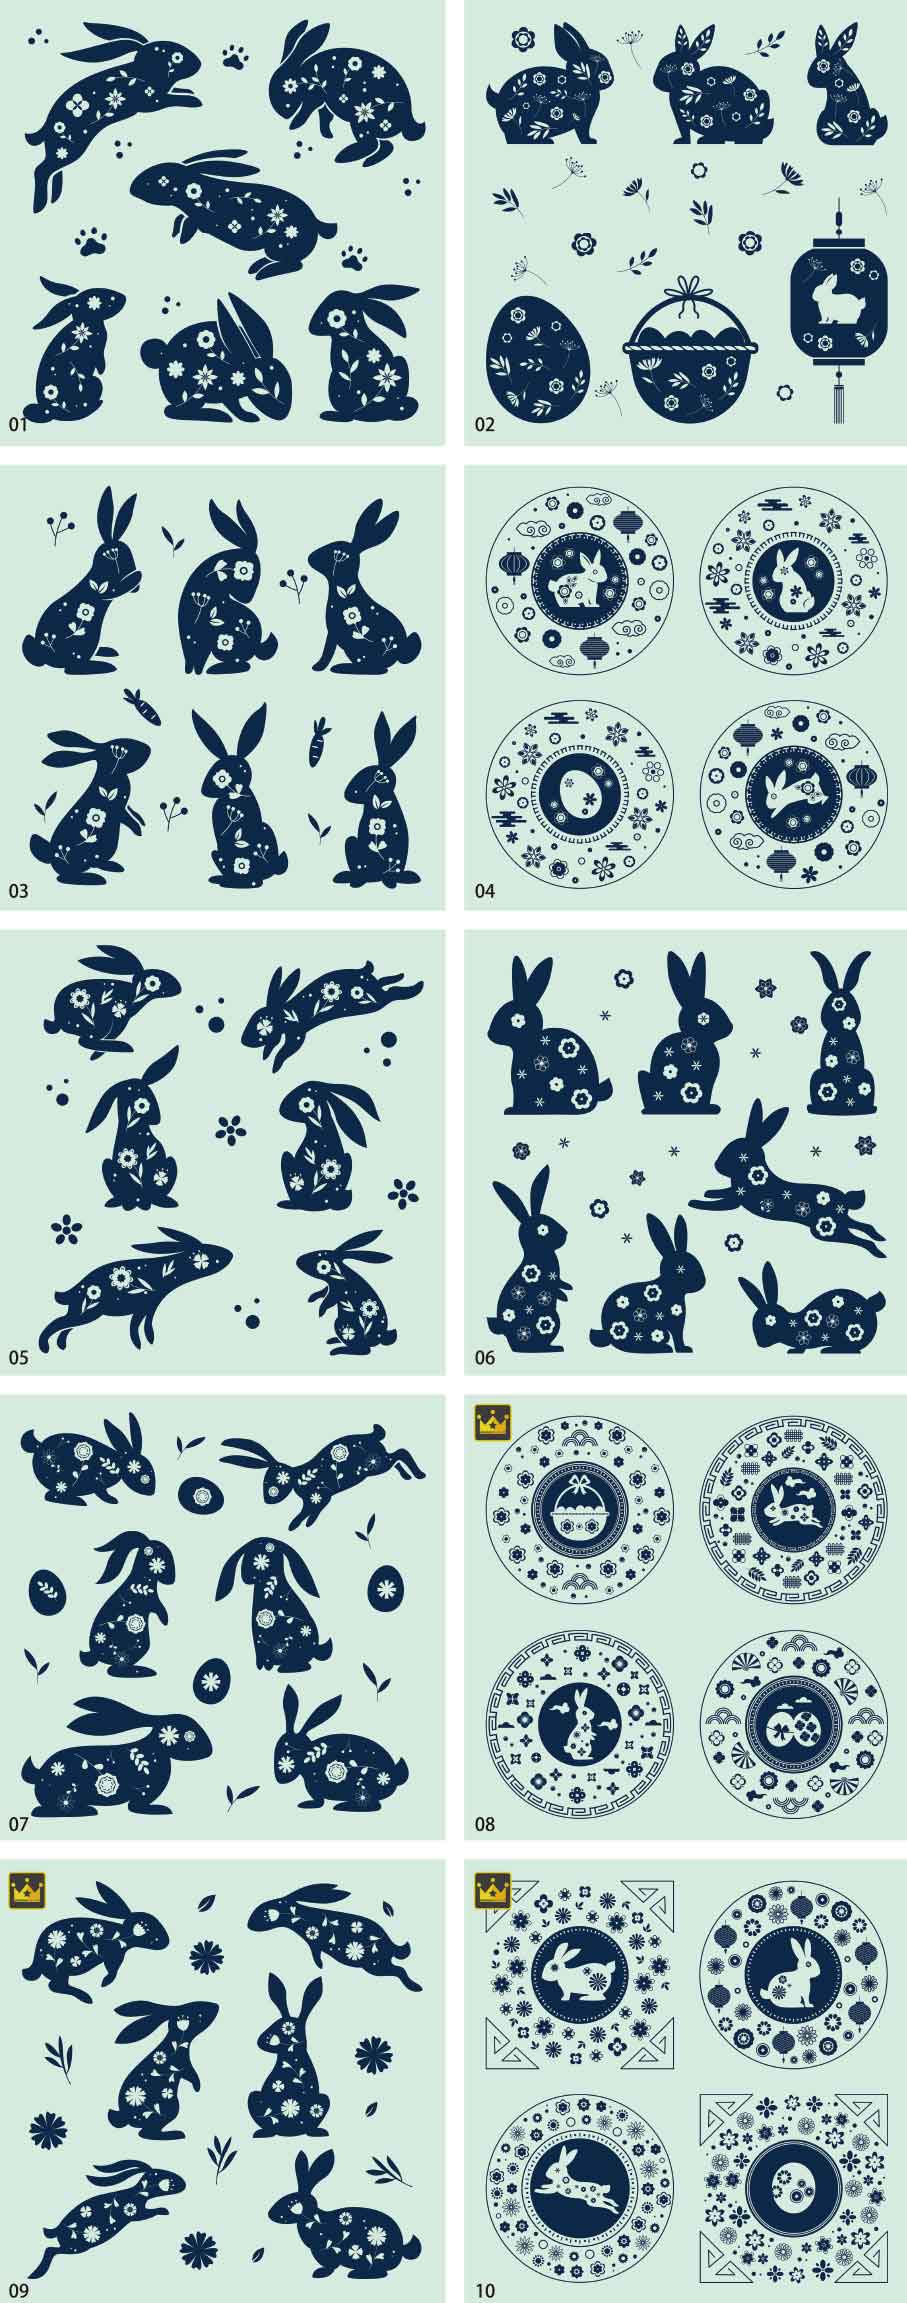 創意兔子插畫合集